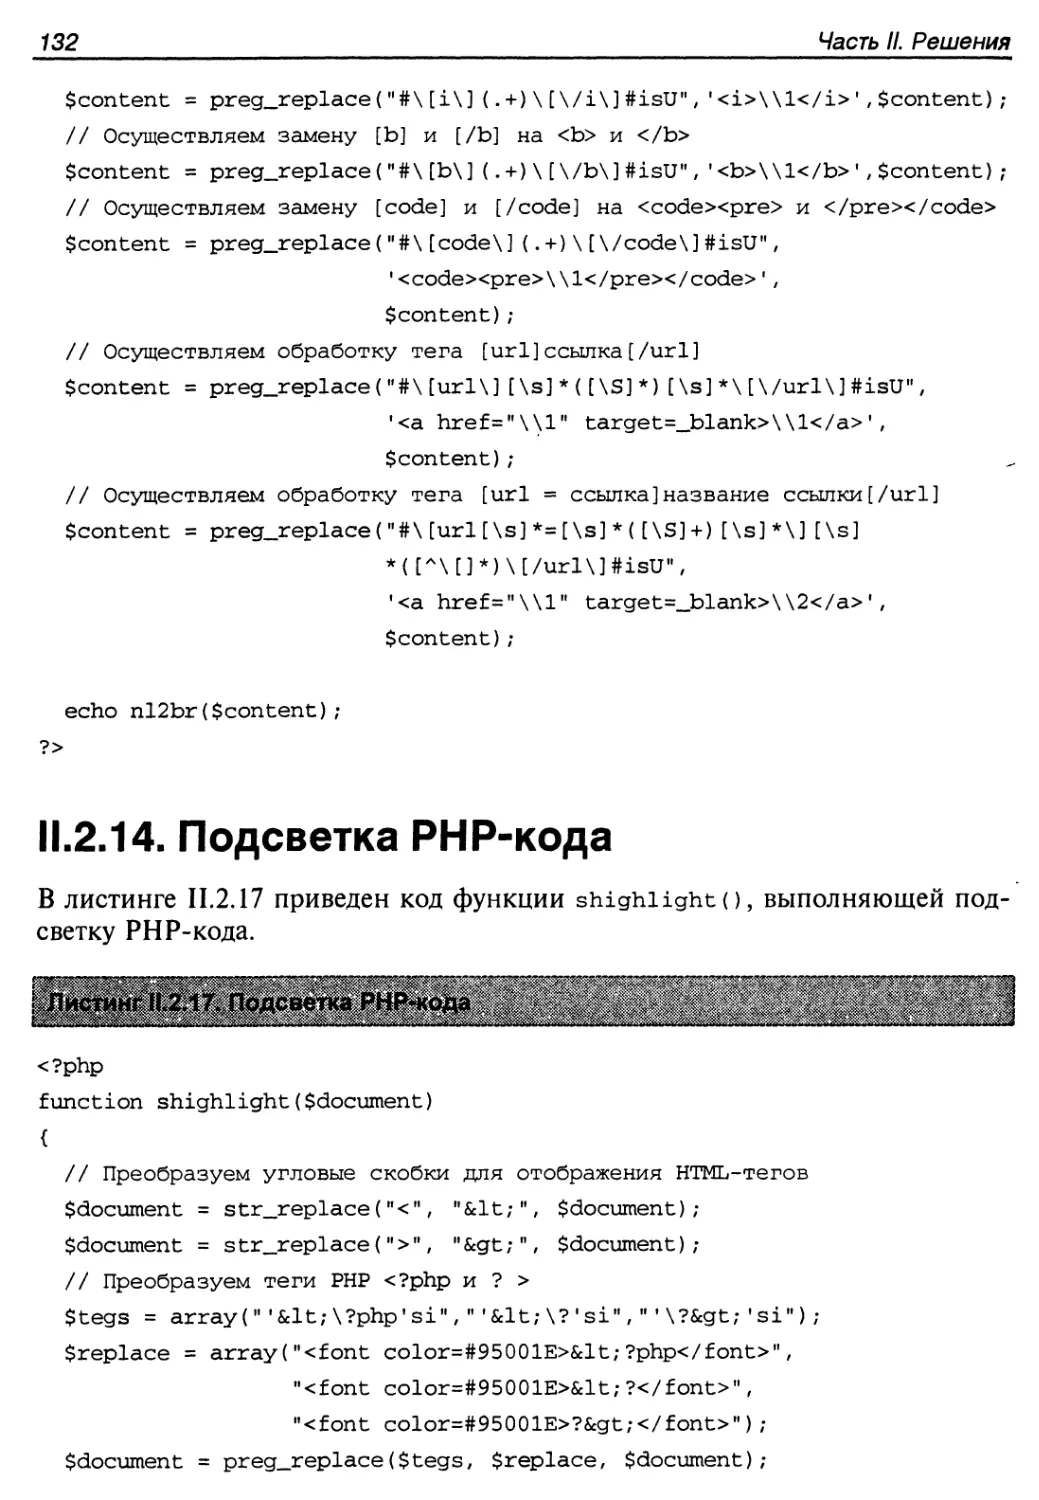 II.2.14. Подсветка PHP-кода